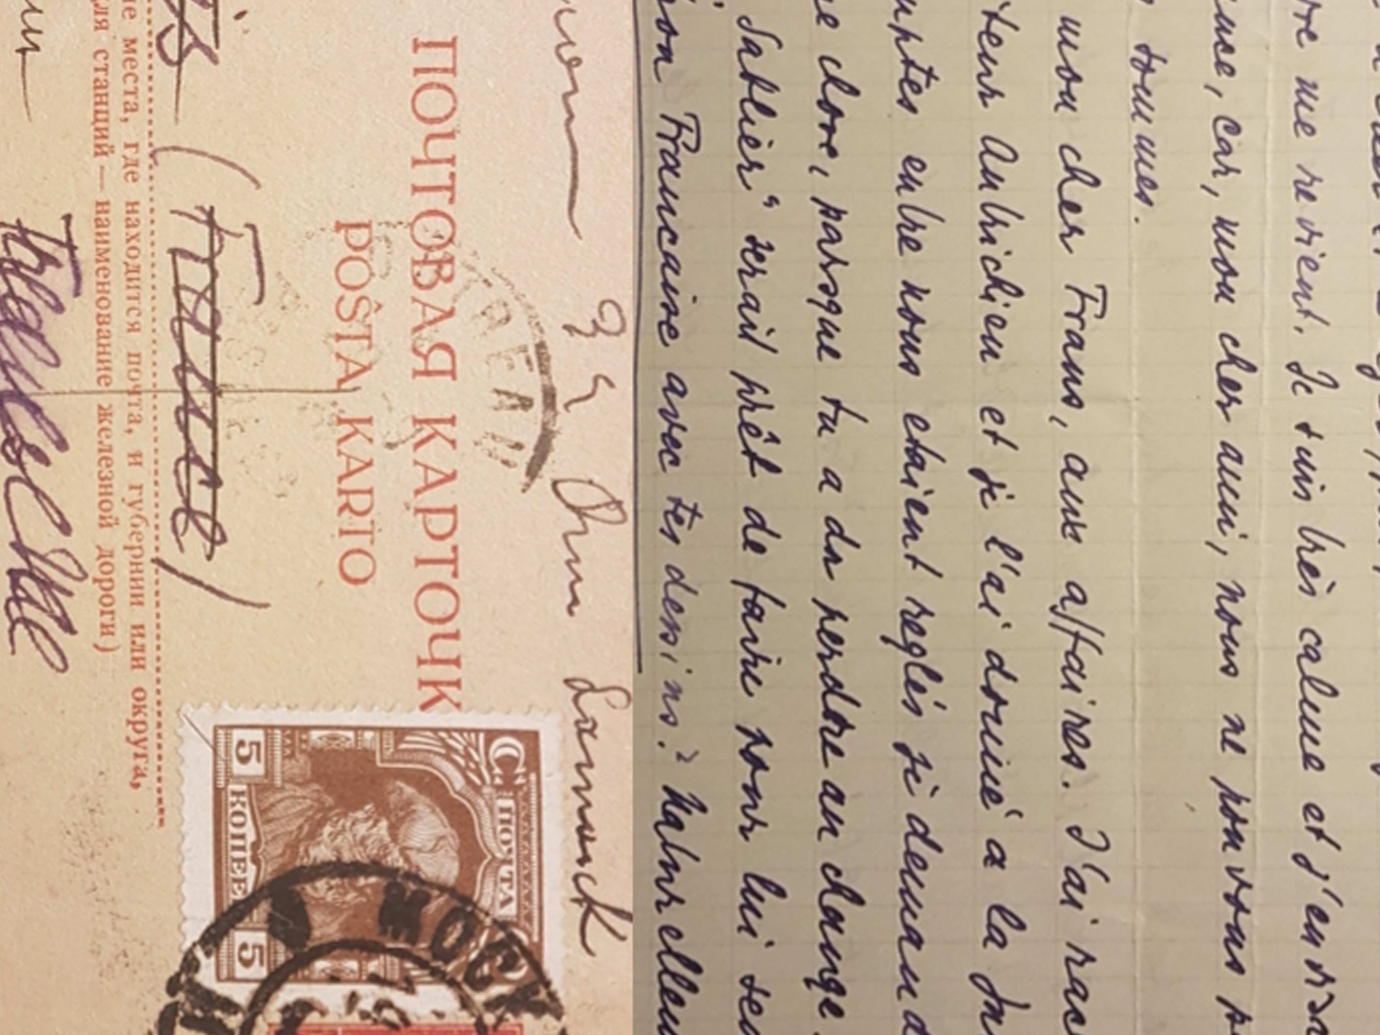  Beitragsbild Briefe von Stefan Zweig und Frans Masereel